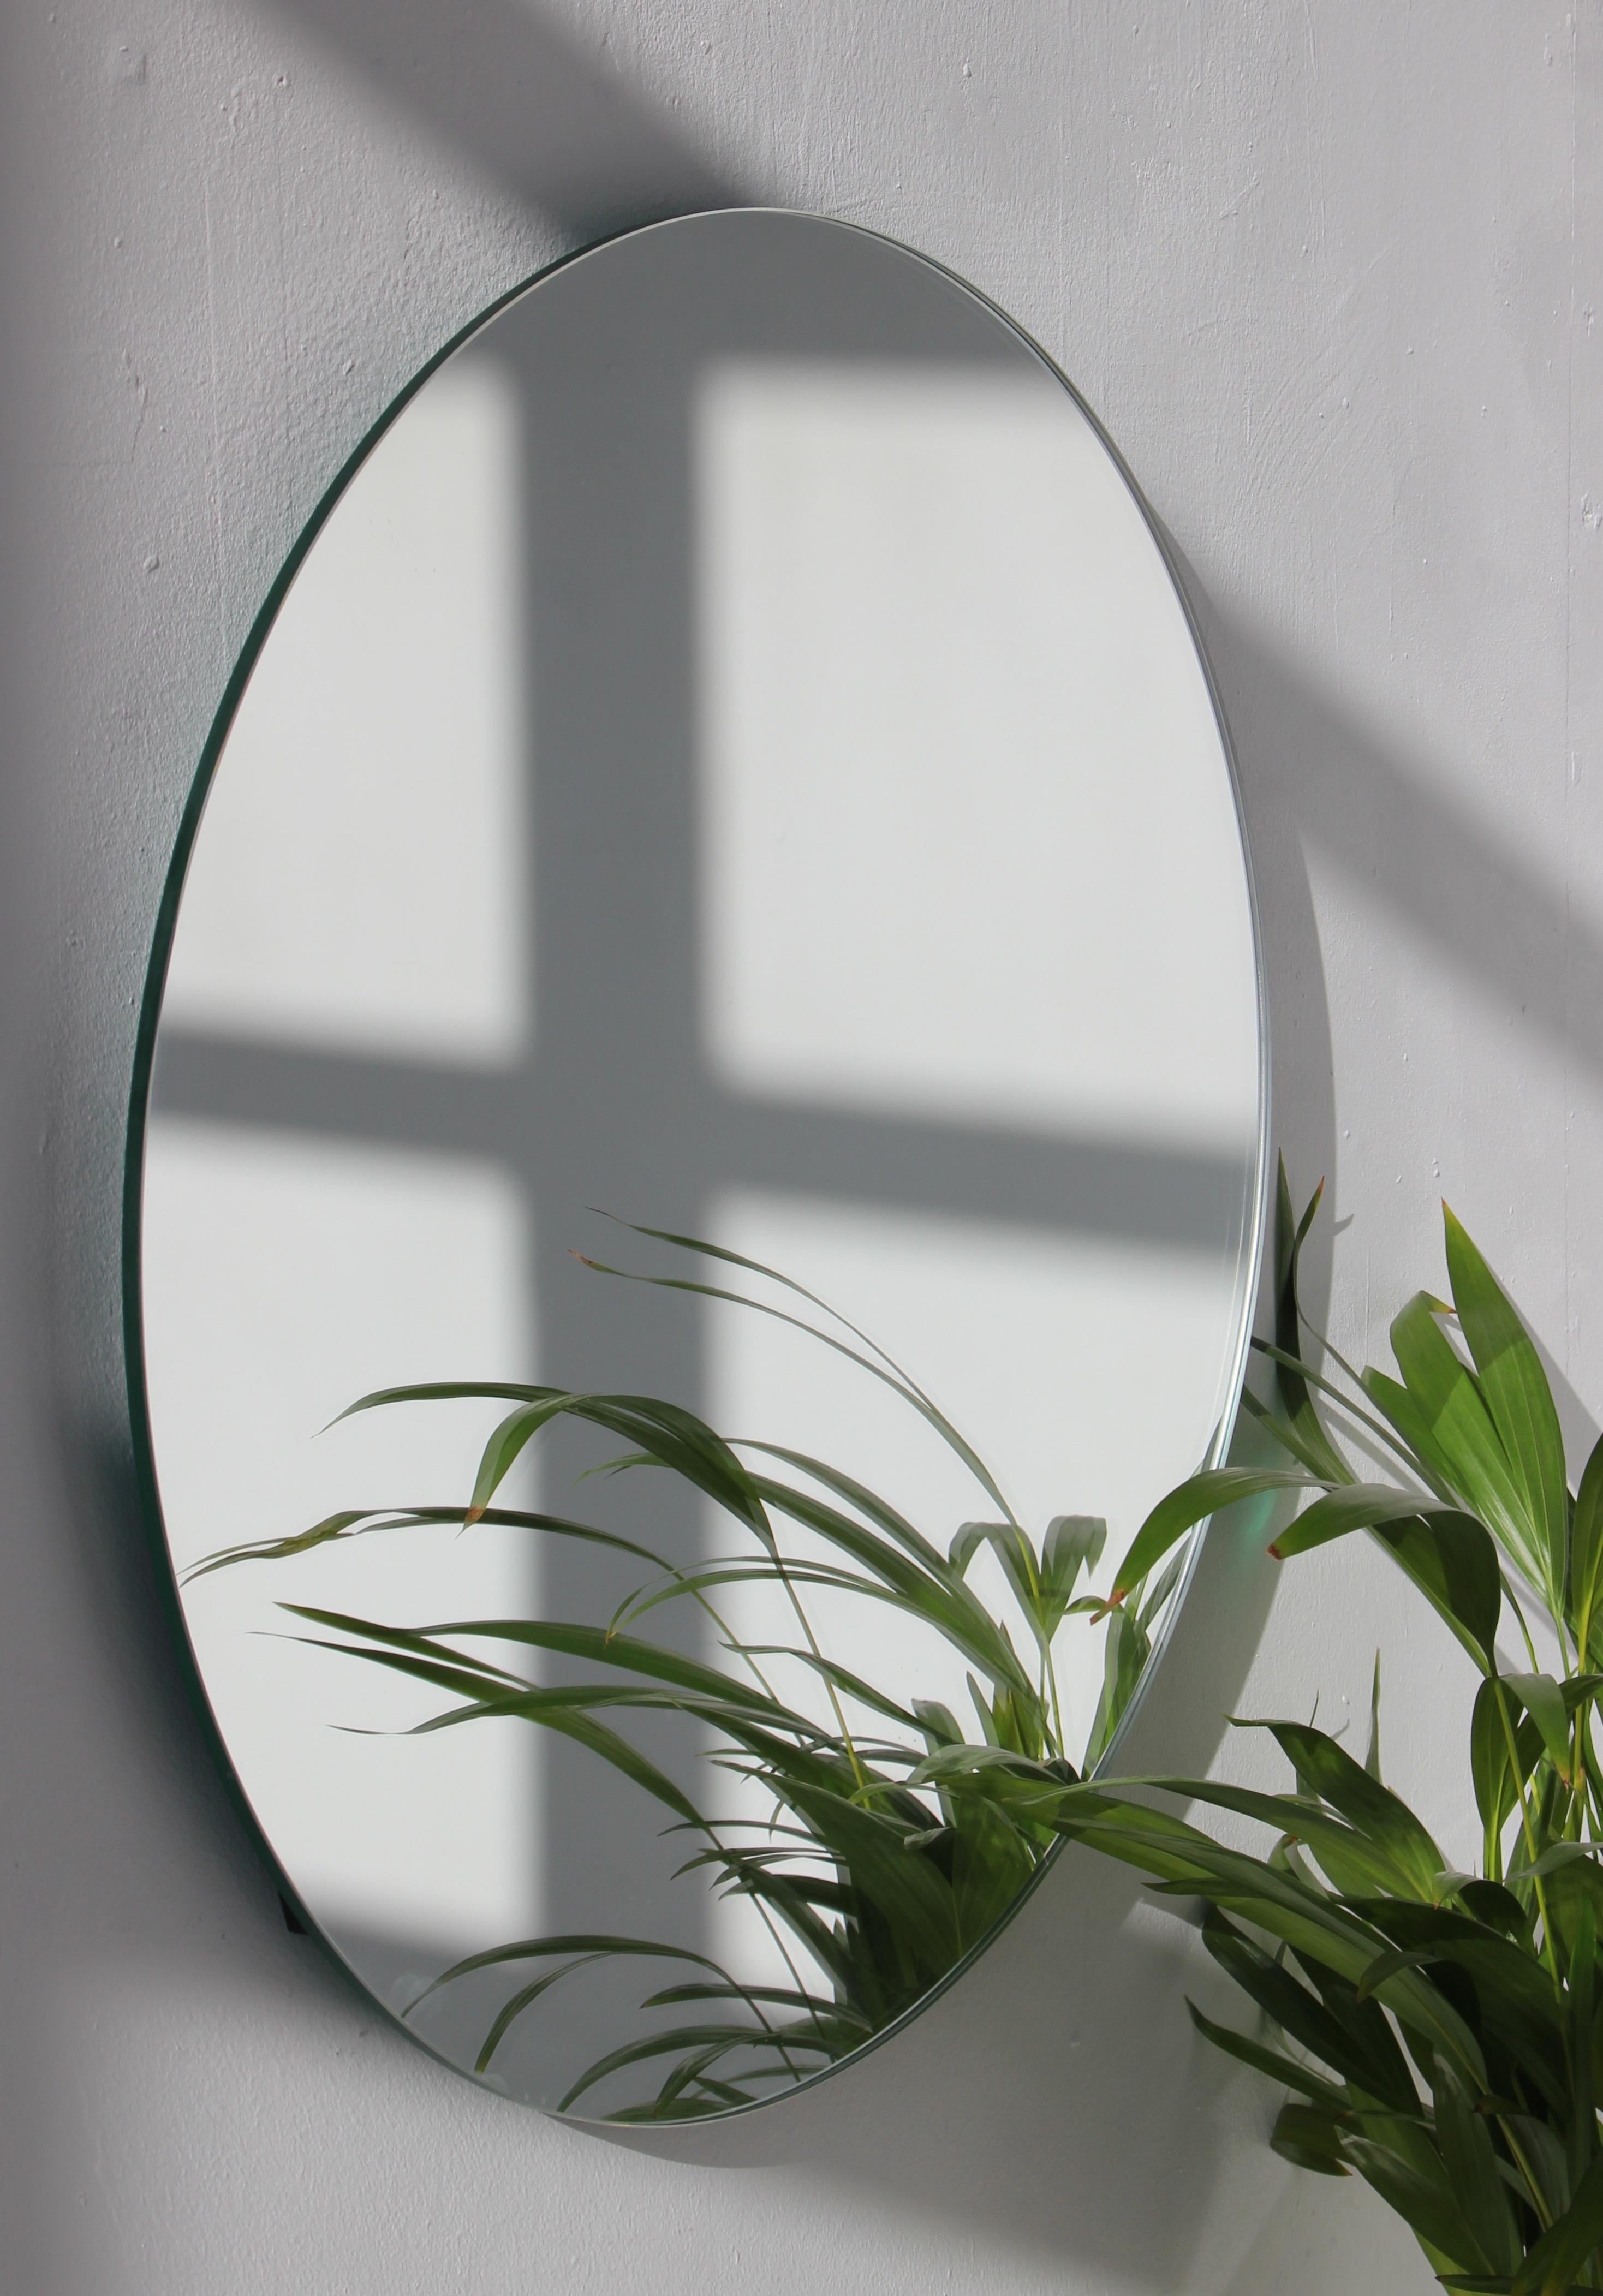 Miroir rond sans cadre, charmant et minimaliste, avec un effet flottant. Un design de qualité qui garantit que le miroir est parfaitement parallèle au mur. Conçu et fabriqué à Londres, au Royaume-Uni.

Equipé de plaques professionnelles non visibles